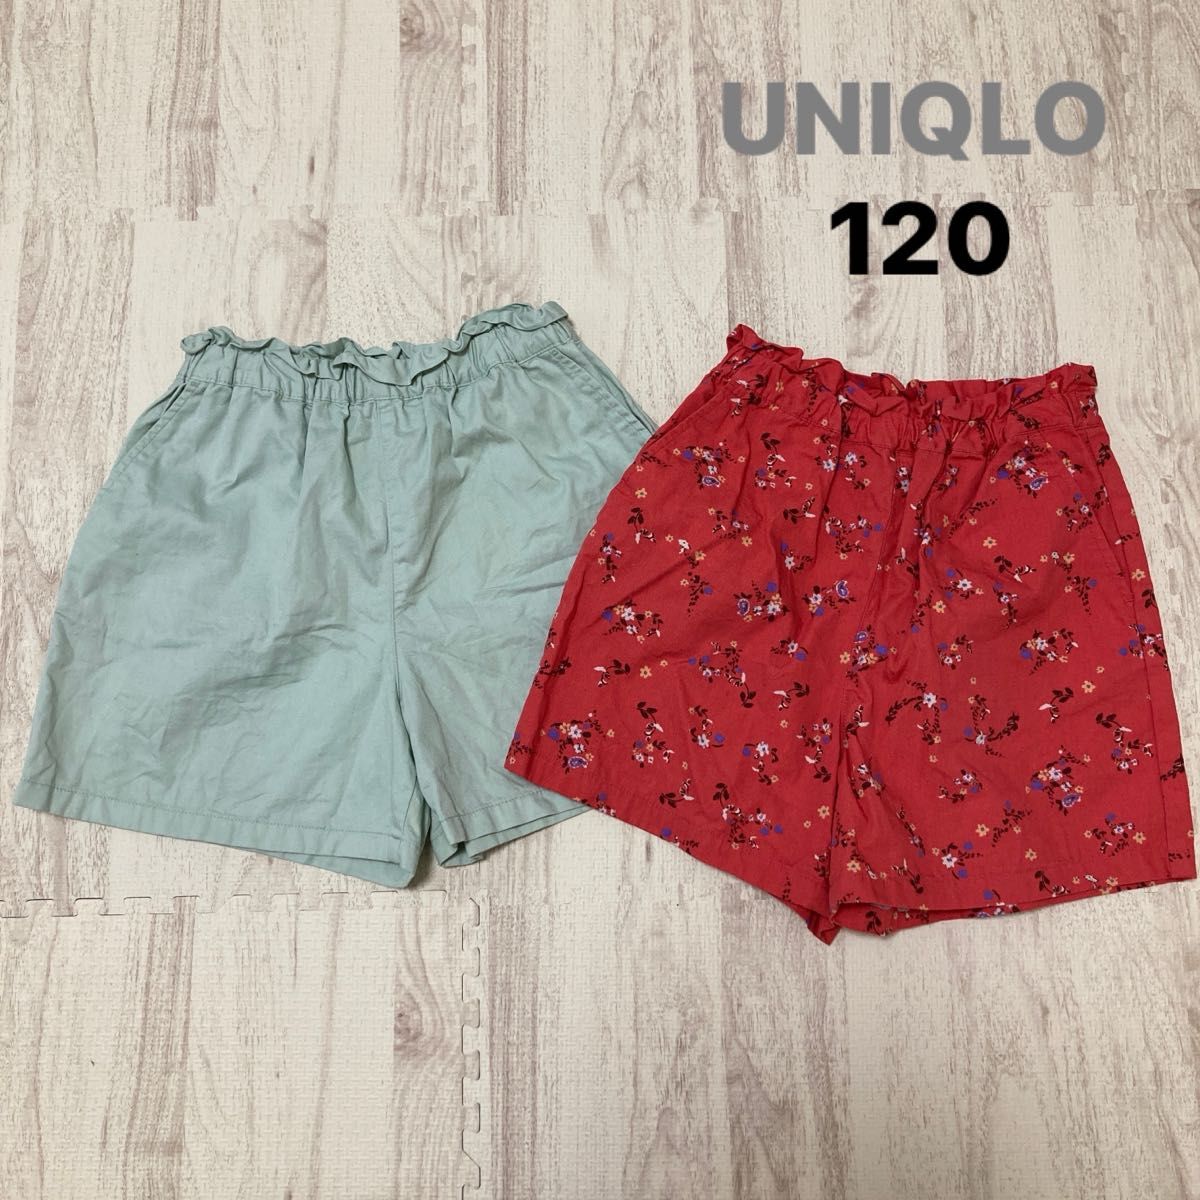 UNIQLO ユニクロ ショートパンツ ハーフパンツ パンツ 短パン ウエストゴム キッズ 女の子 120